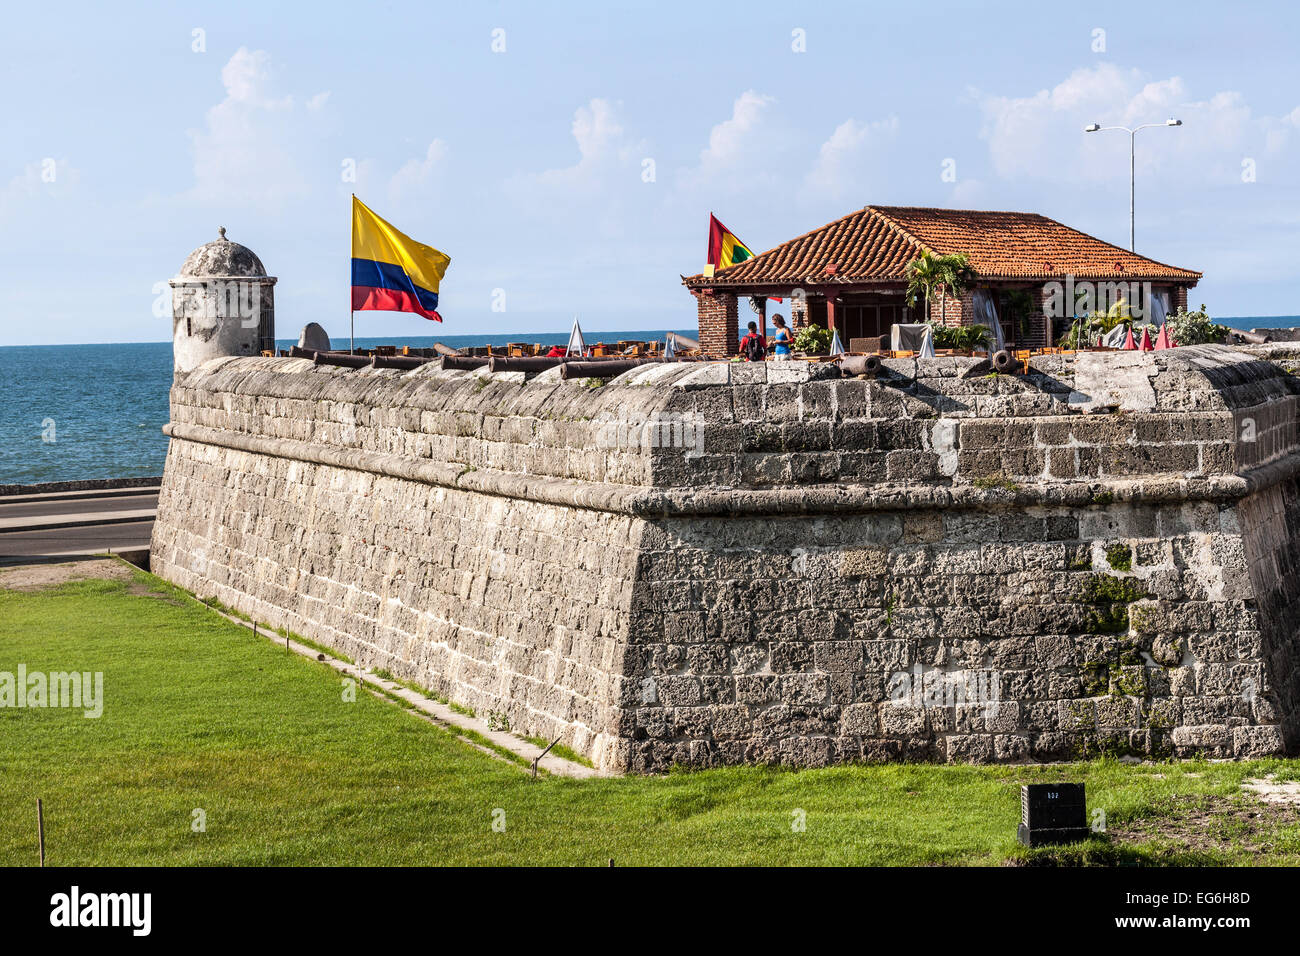 Ville fortifiée, mur murallas, Cartagena de Indias, Colombie. Banque D'Images